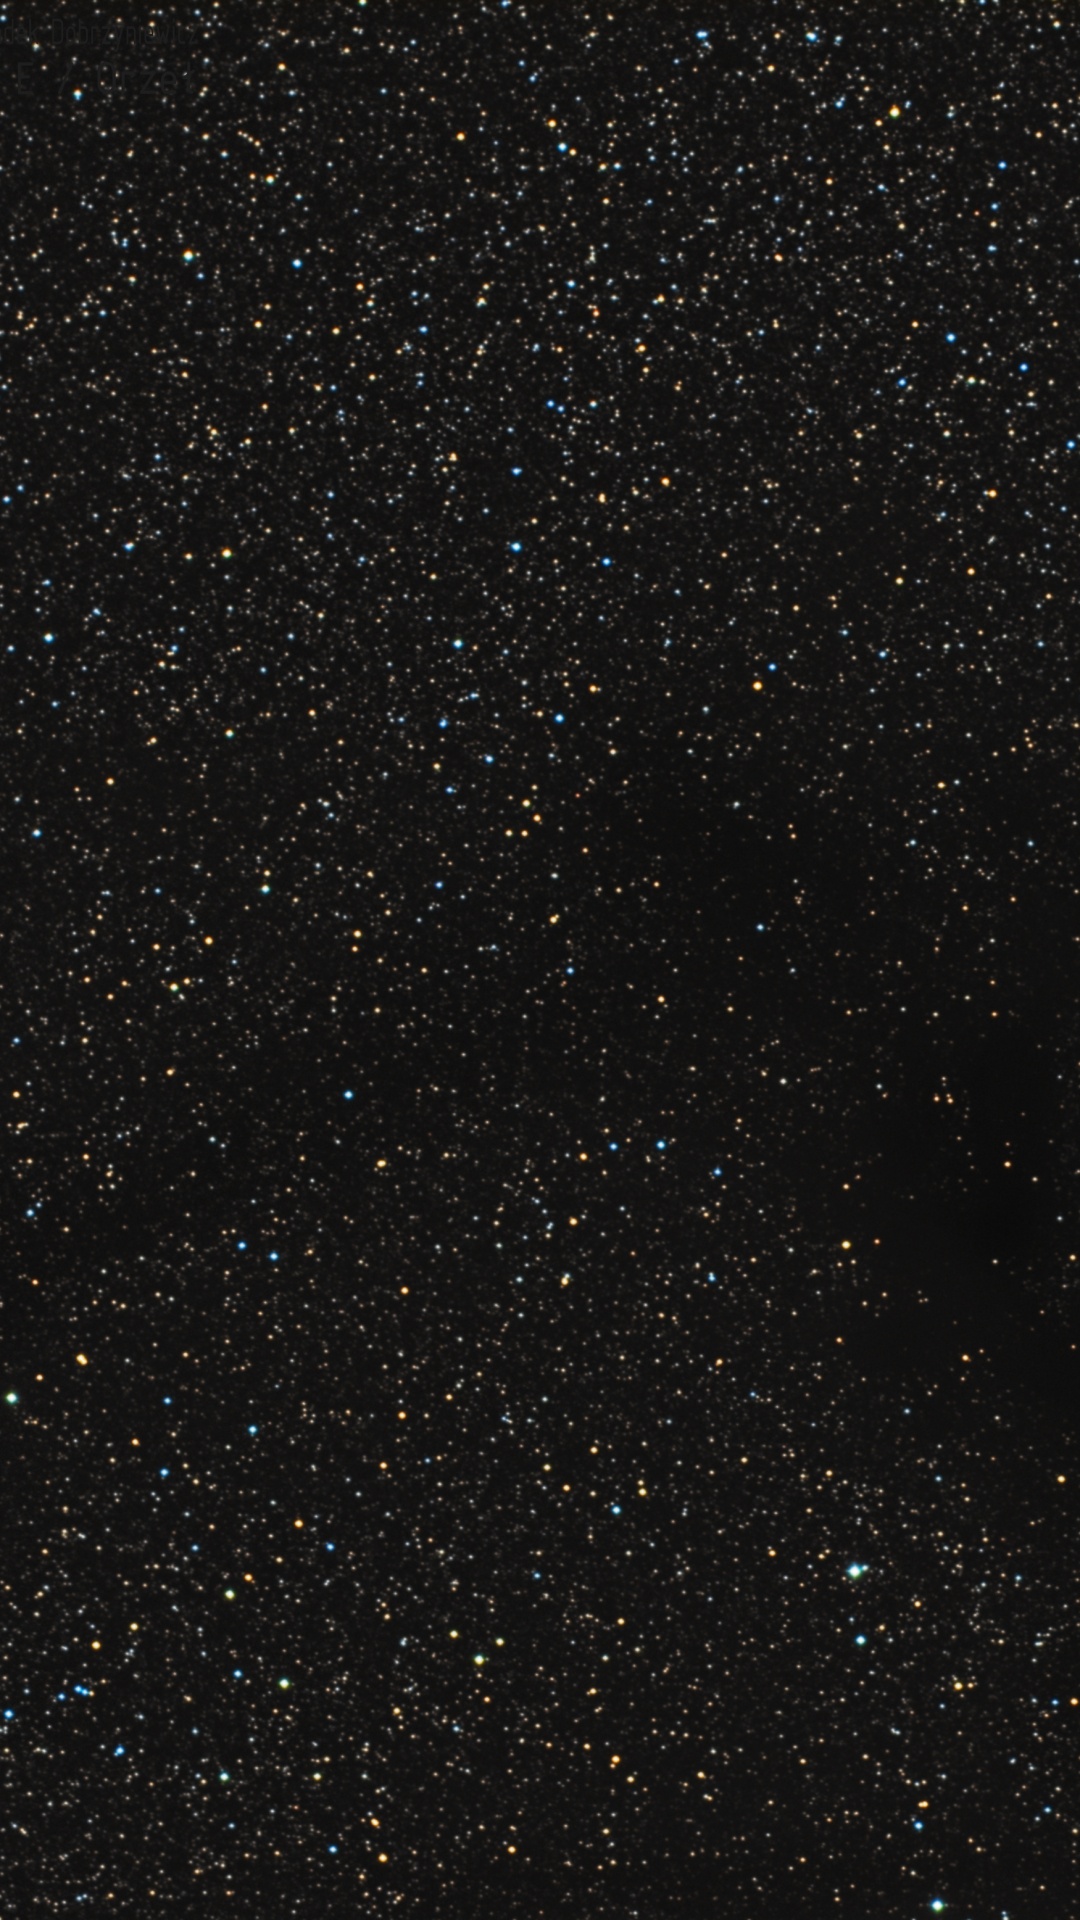 气氛, 明星, 天文学, 宇宙, 天文学对象 壁纸 1080x1920 允许